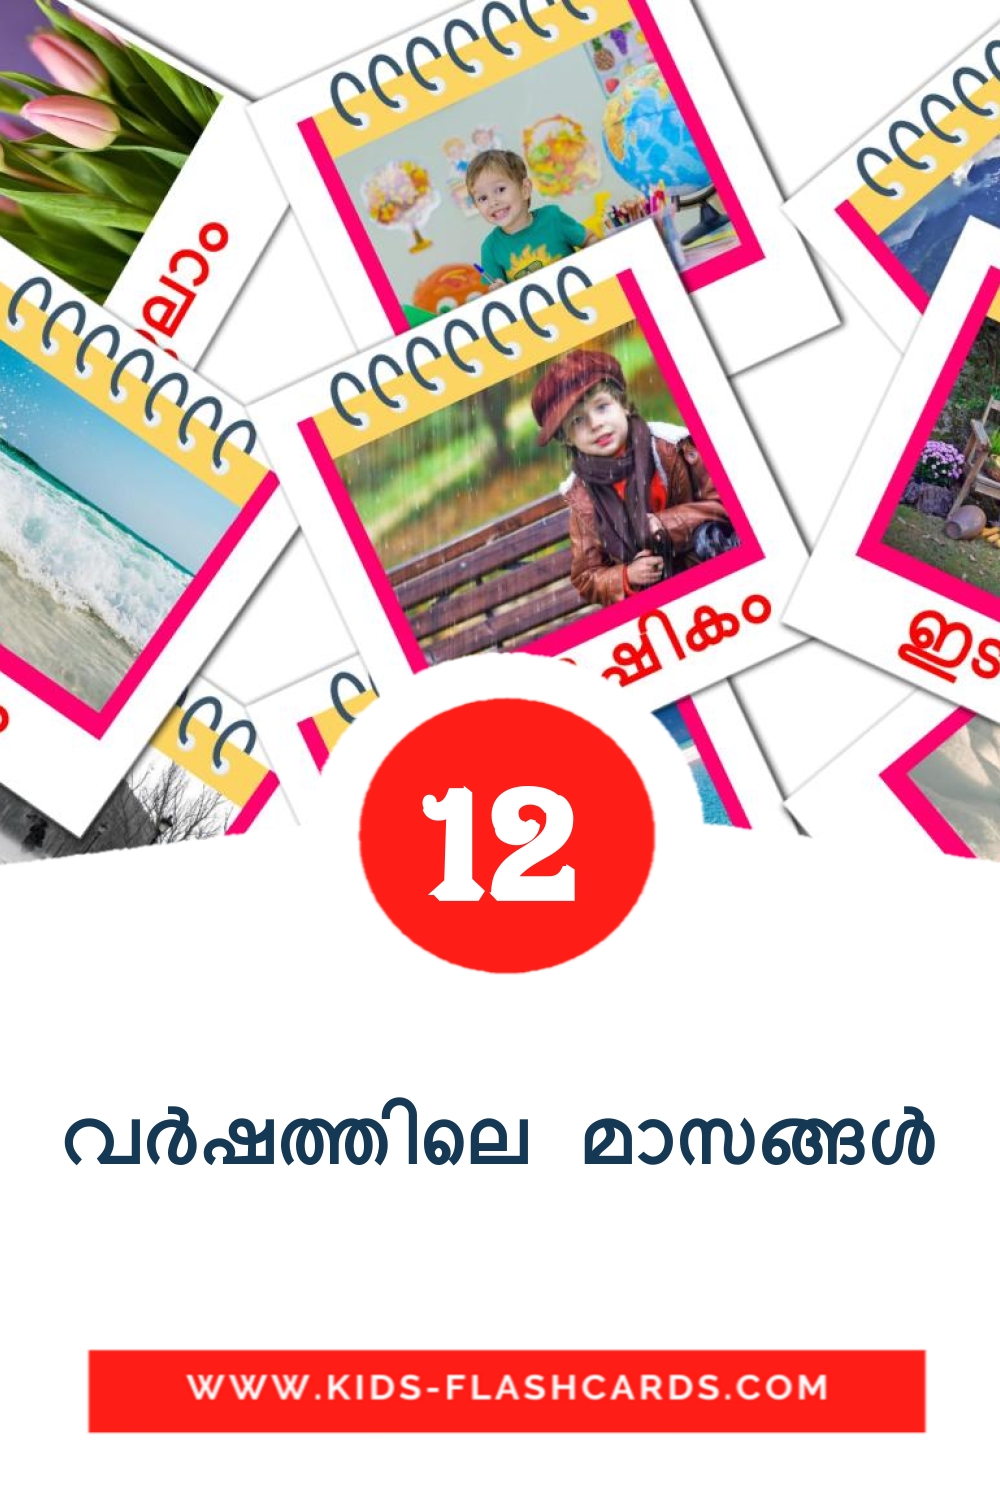 12 tarjetas didacticas de വർഷത്തിലെ മാസങ്ങൾ para el jardín de infancia en malayalam